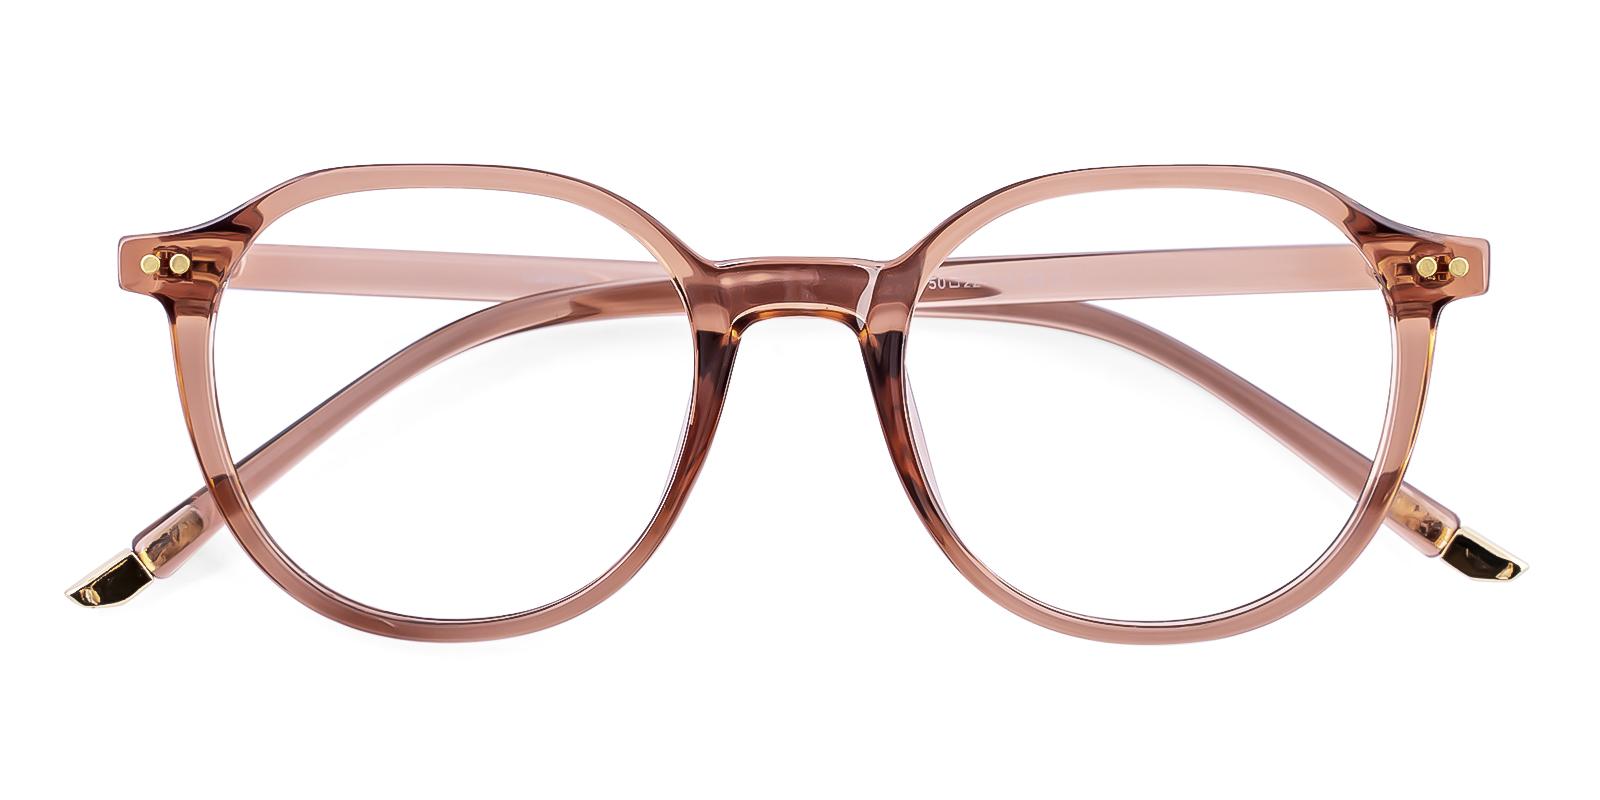 Restlike Brown Plastic Eyeglasses , UniversalBridgeFit Frames from ABBE Glasses